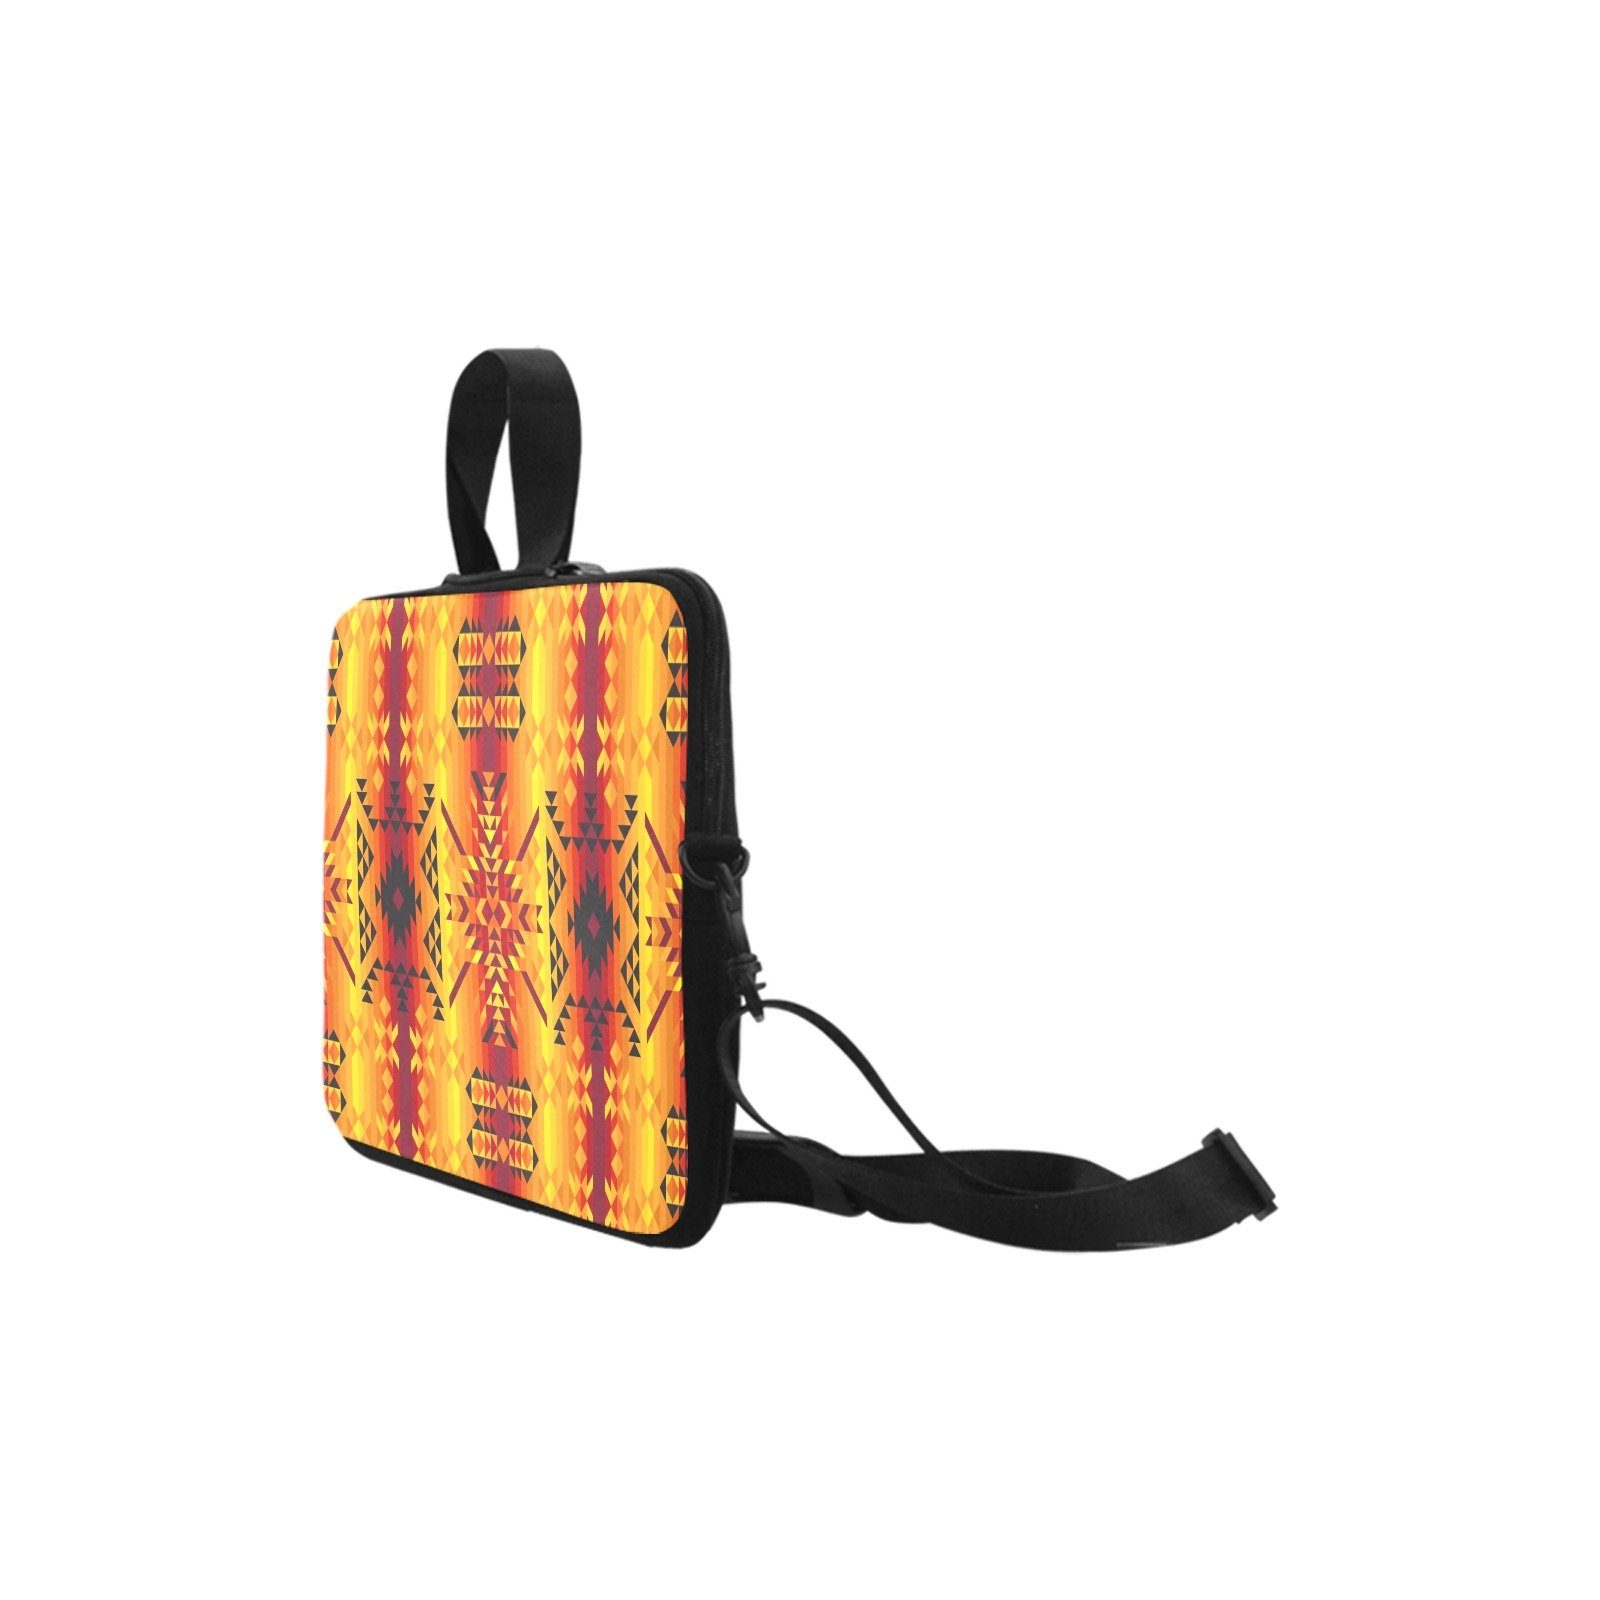 Desert Geo Yellow Red Laptop Handbags 14" bag e-joyer 